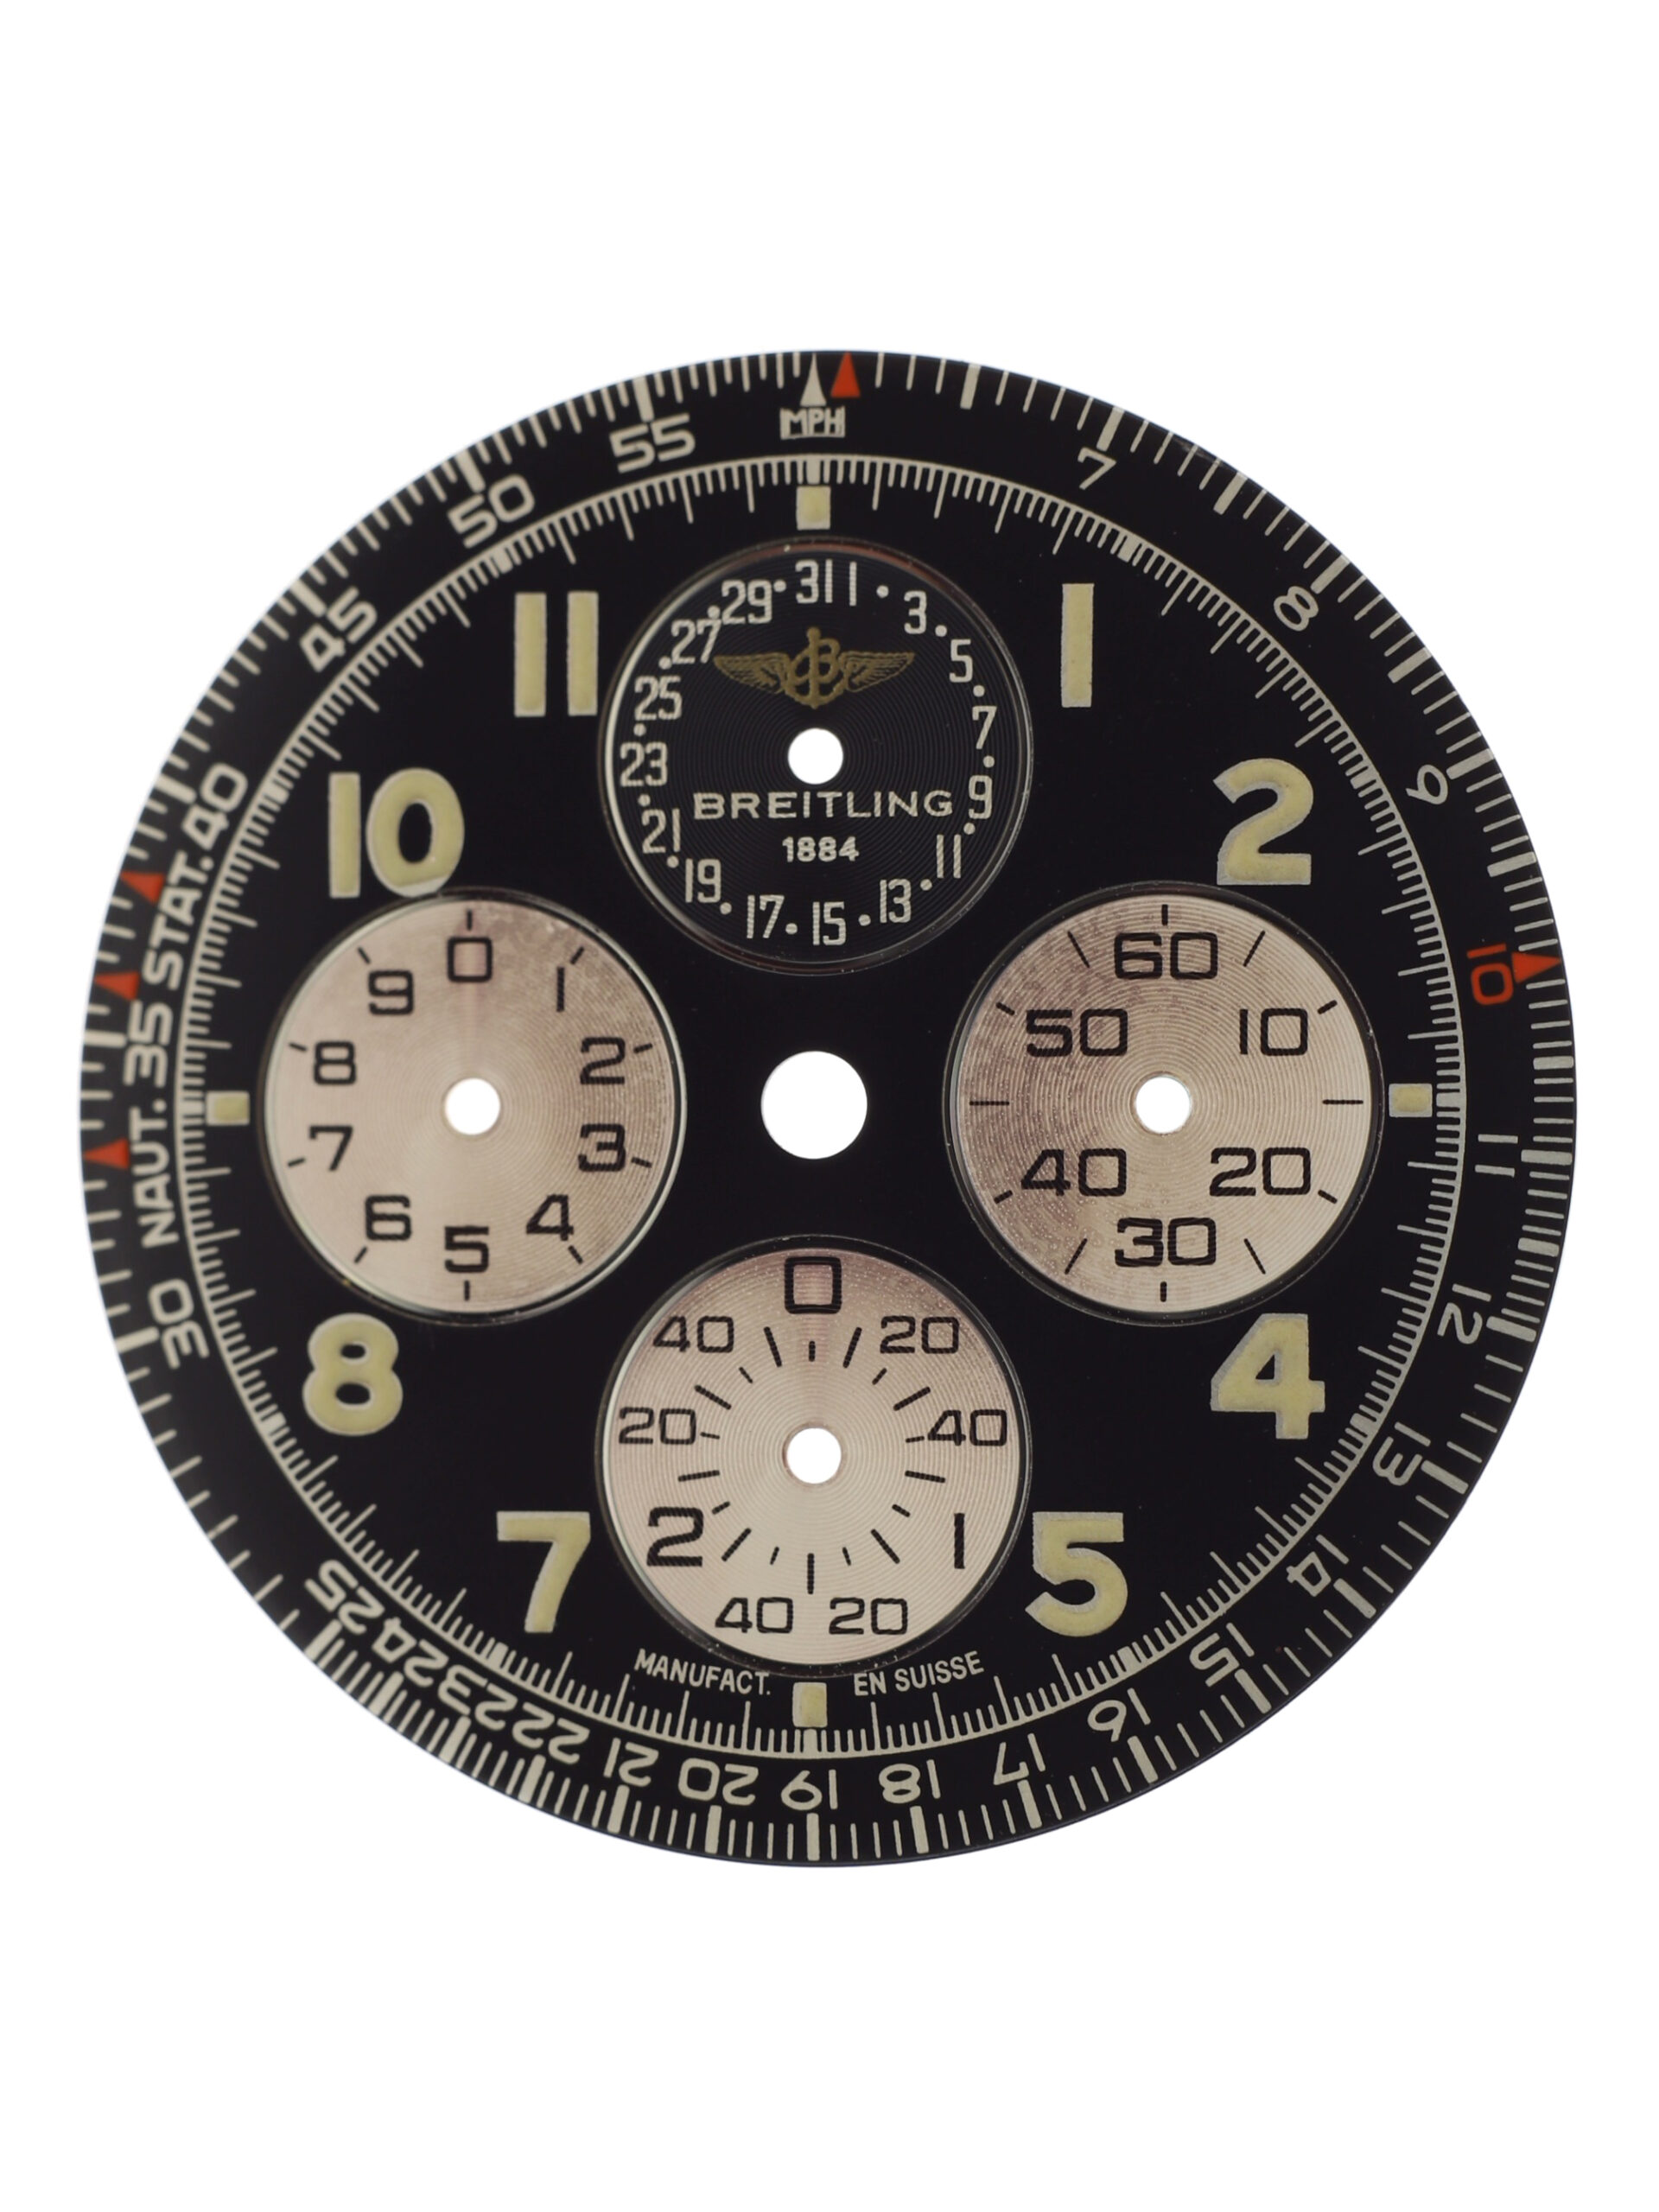 Breitling Chronograph Navitimer 1990s - Gisbert A. Joseph Watches